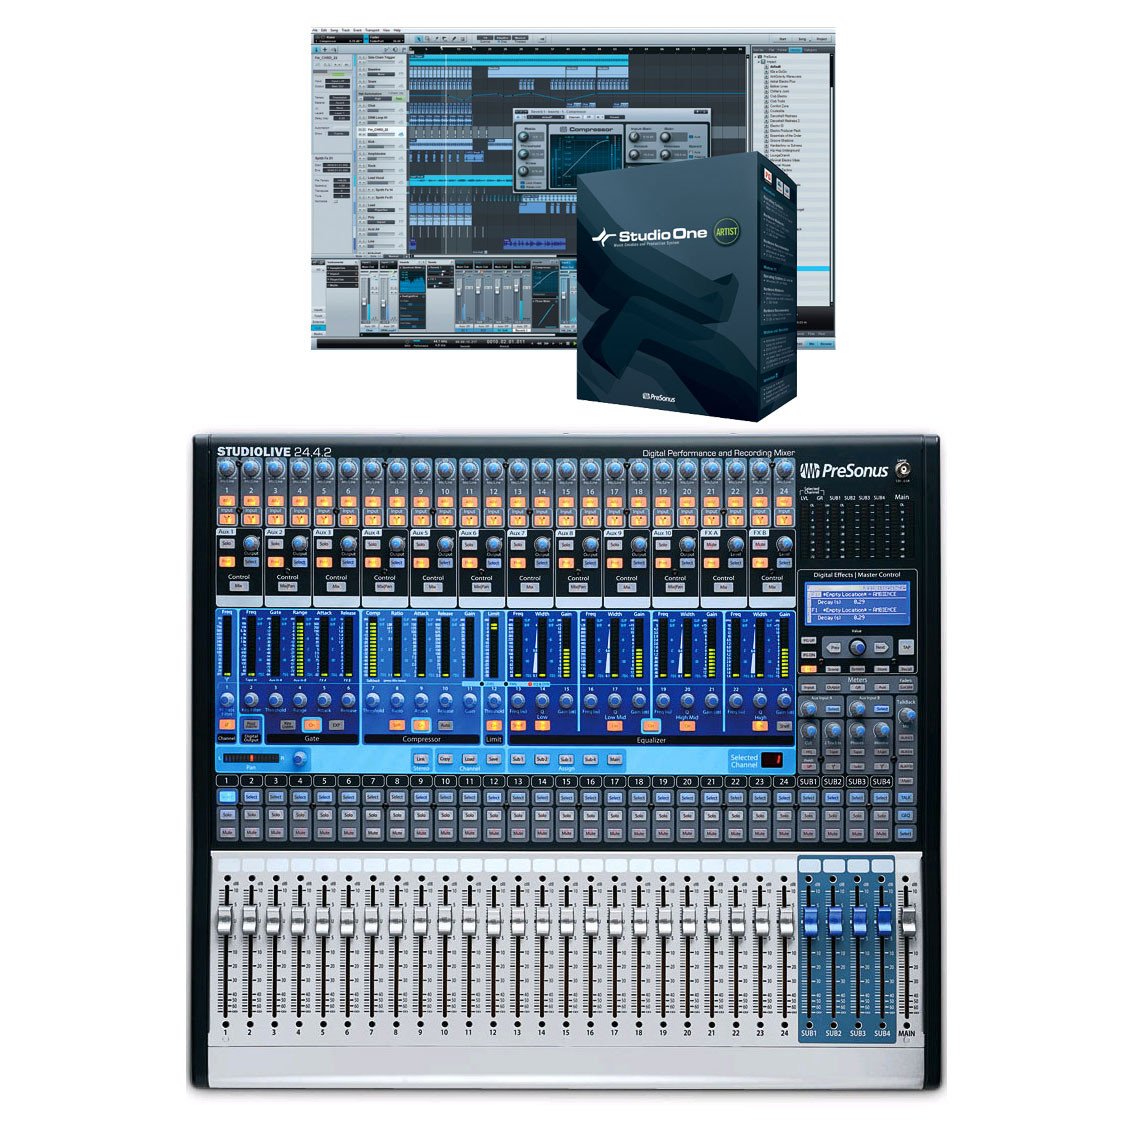 presonus studiolive 24.4.2 digital mixer